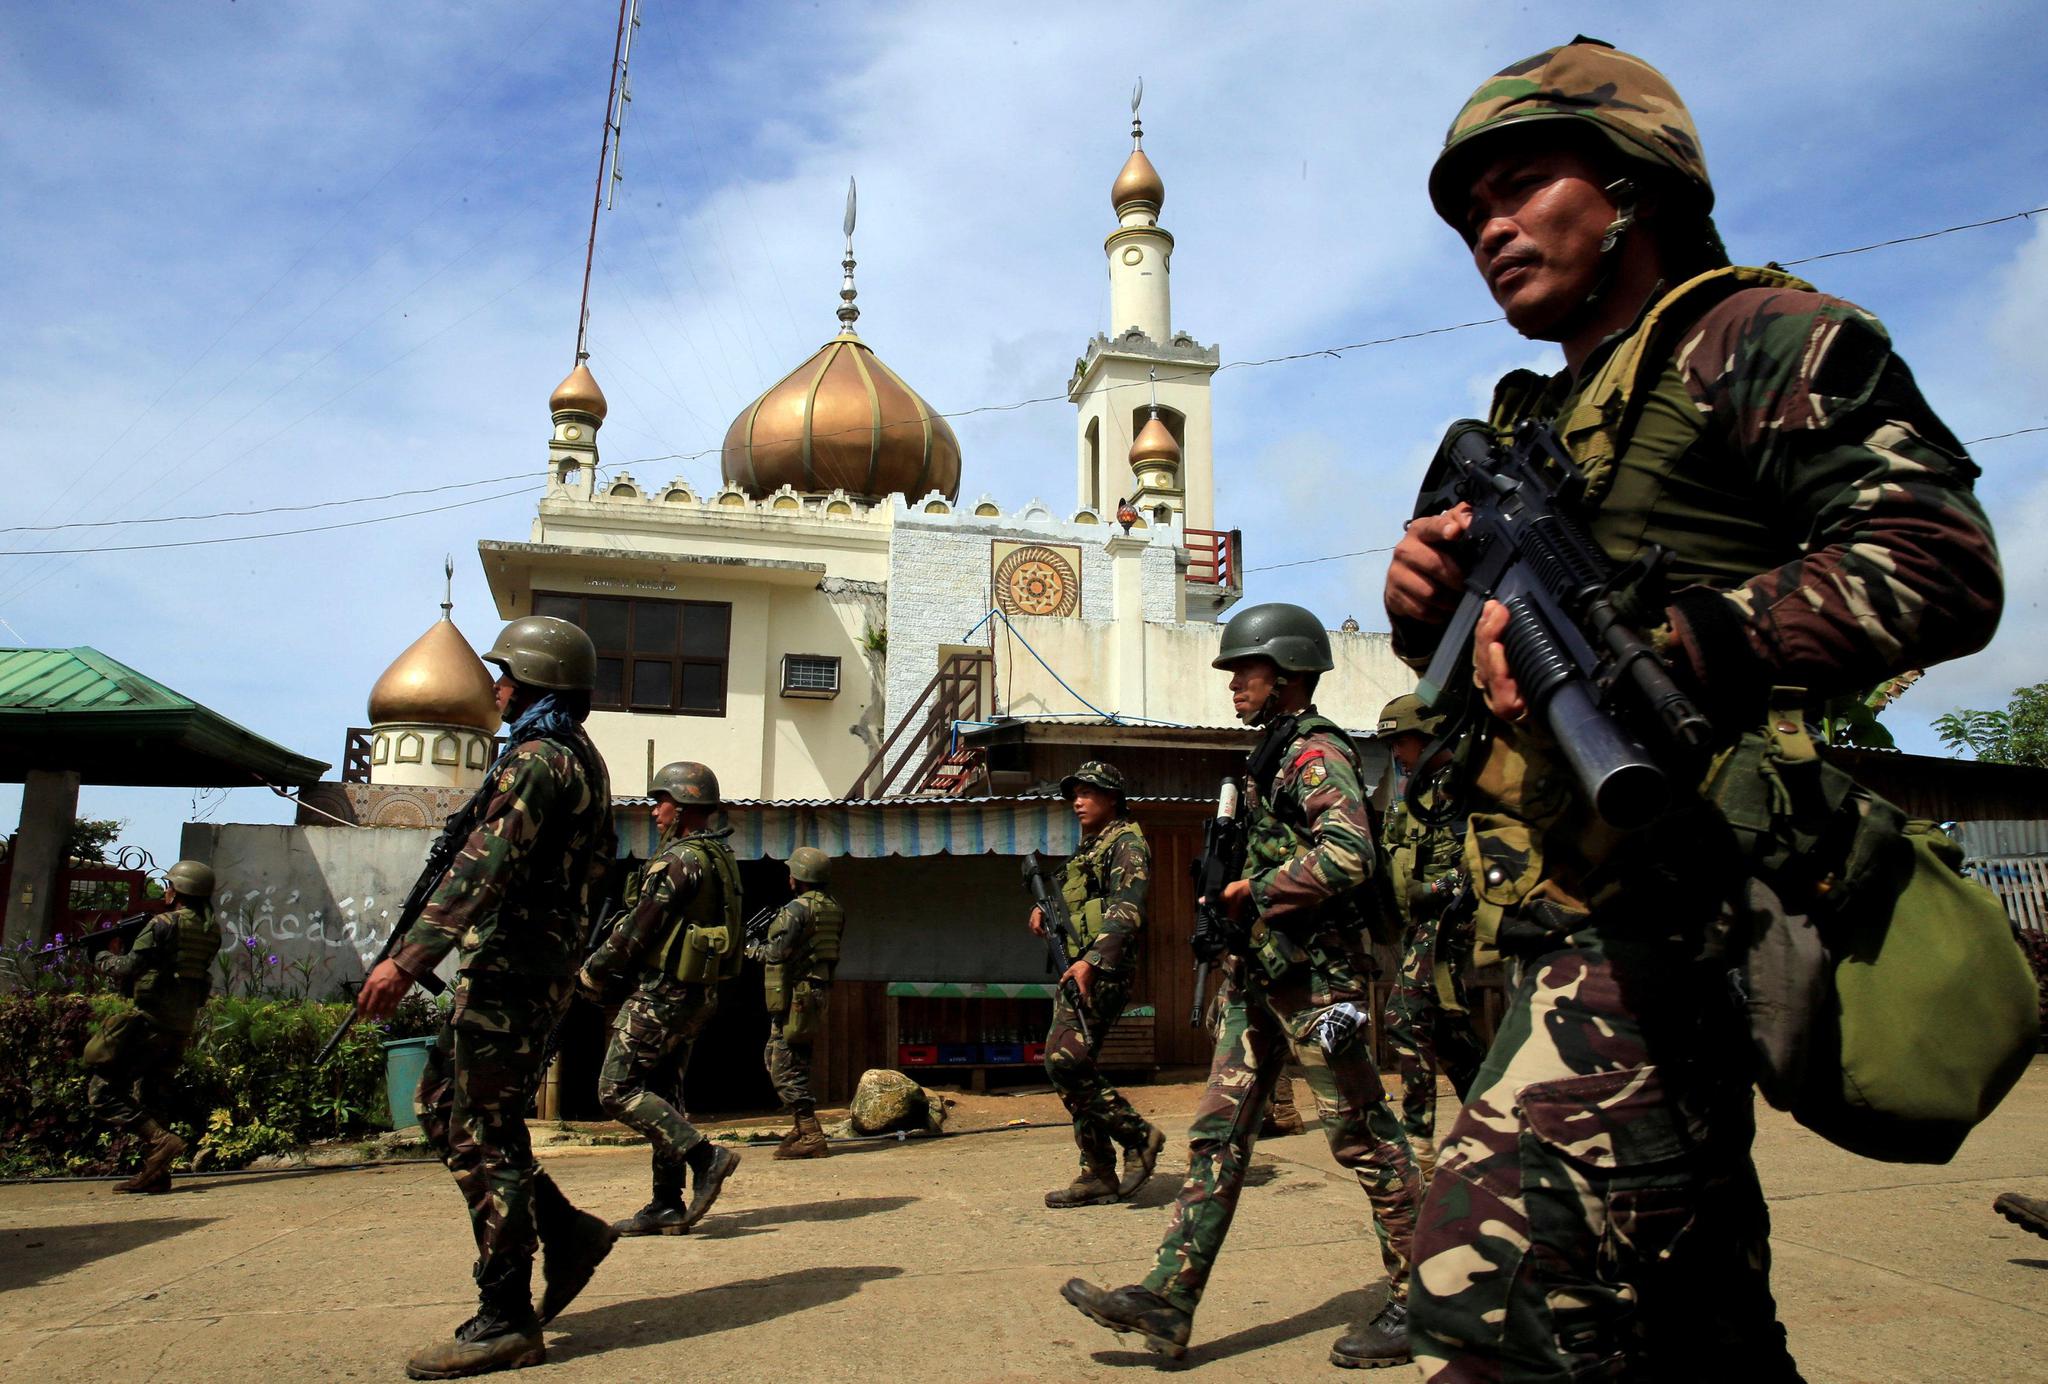 菲律宾恐袭乱局谁是幕后推手?|阿布沙耶夫|穆特